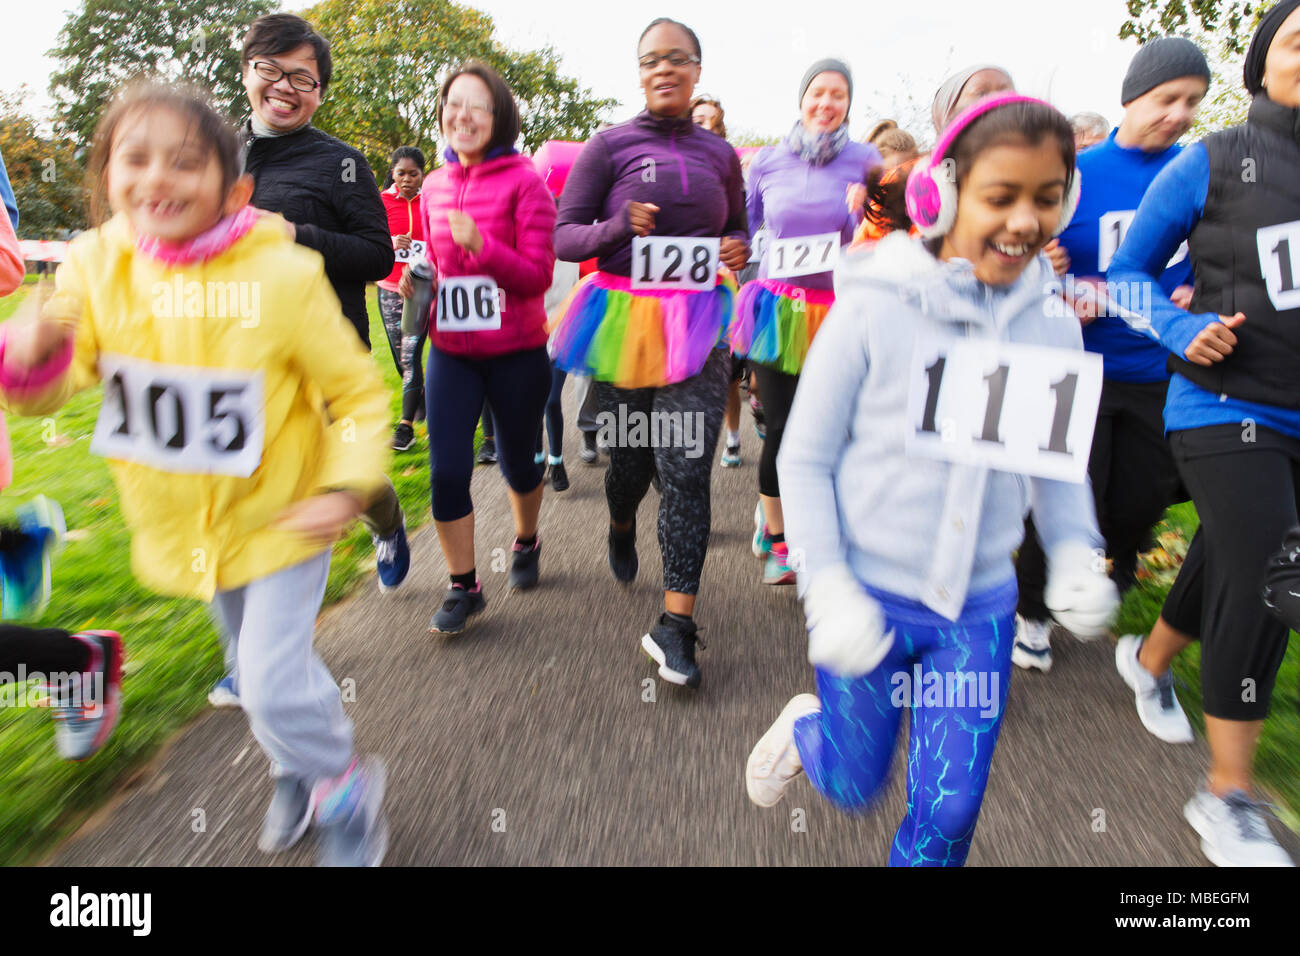 Runners running at charity run Stock Photo